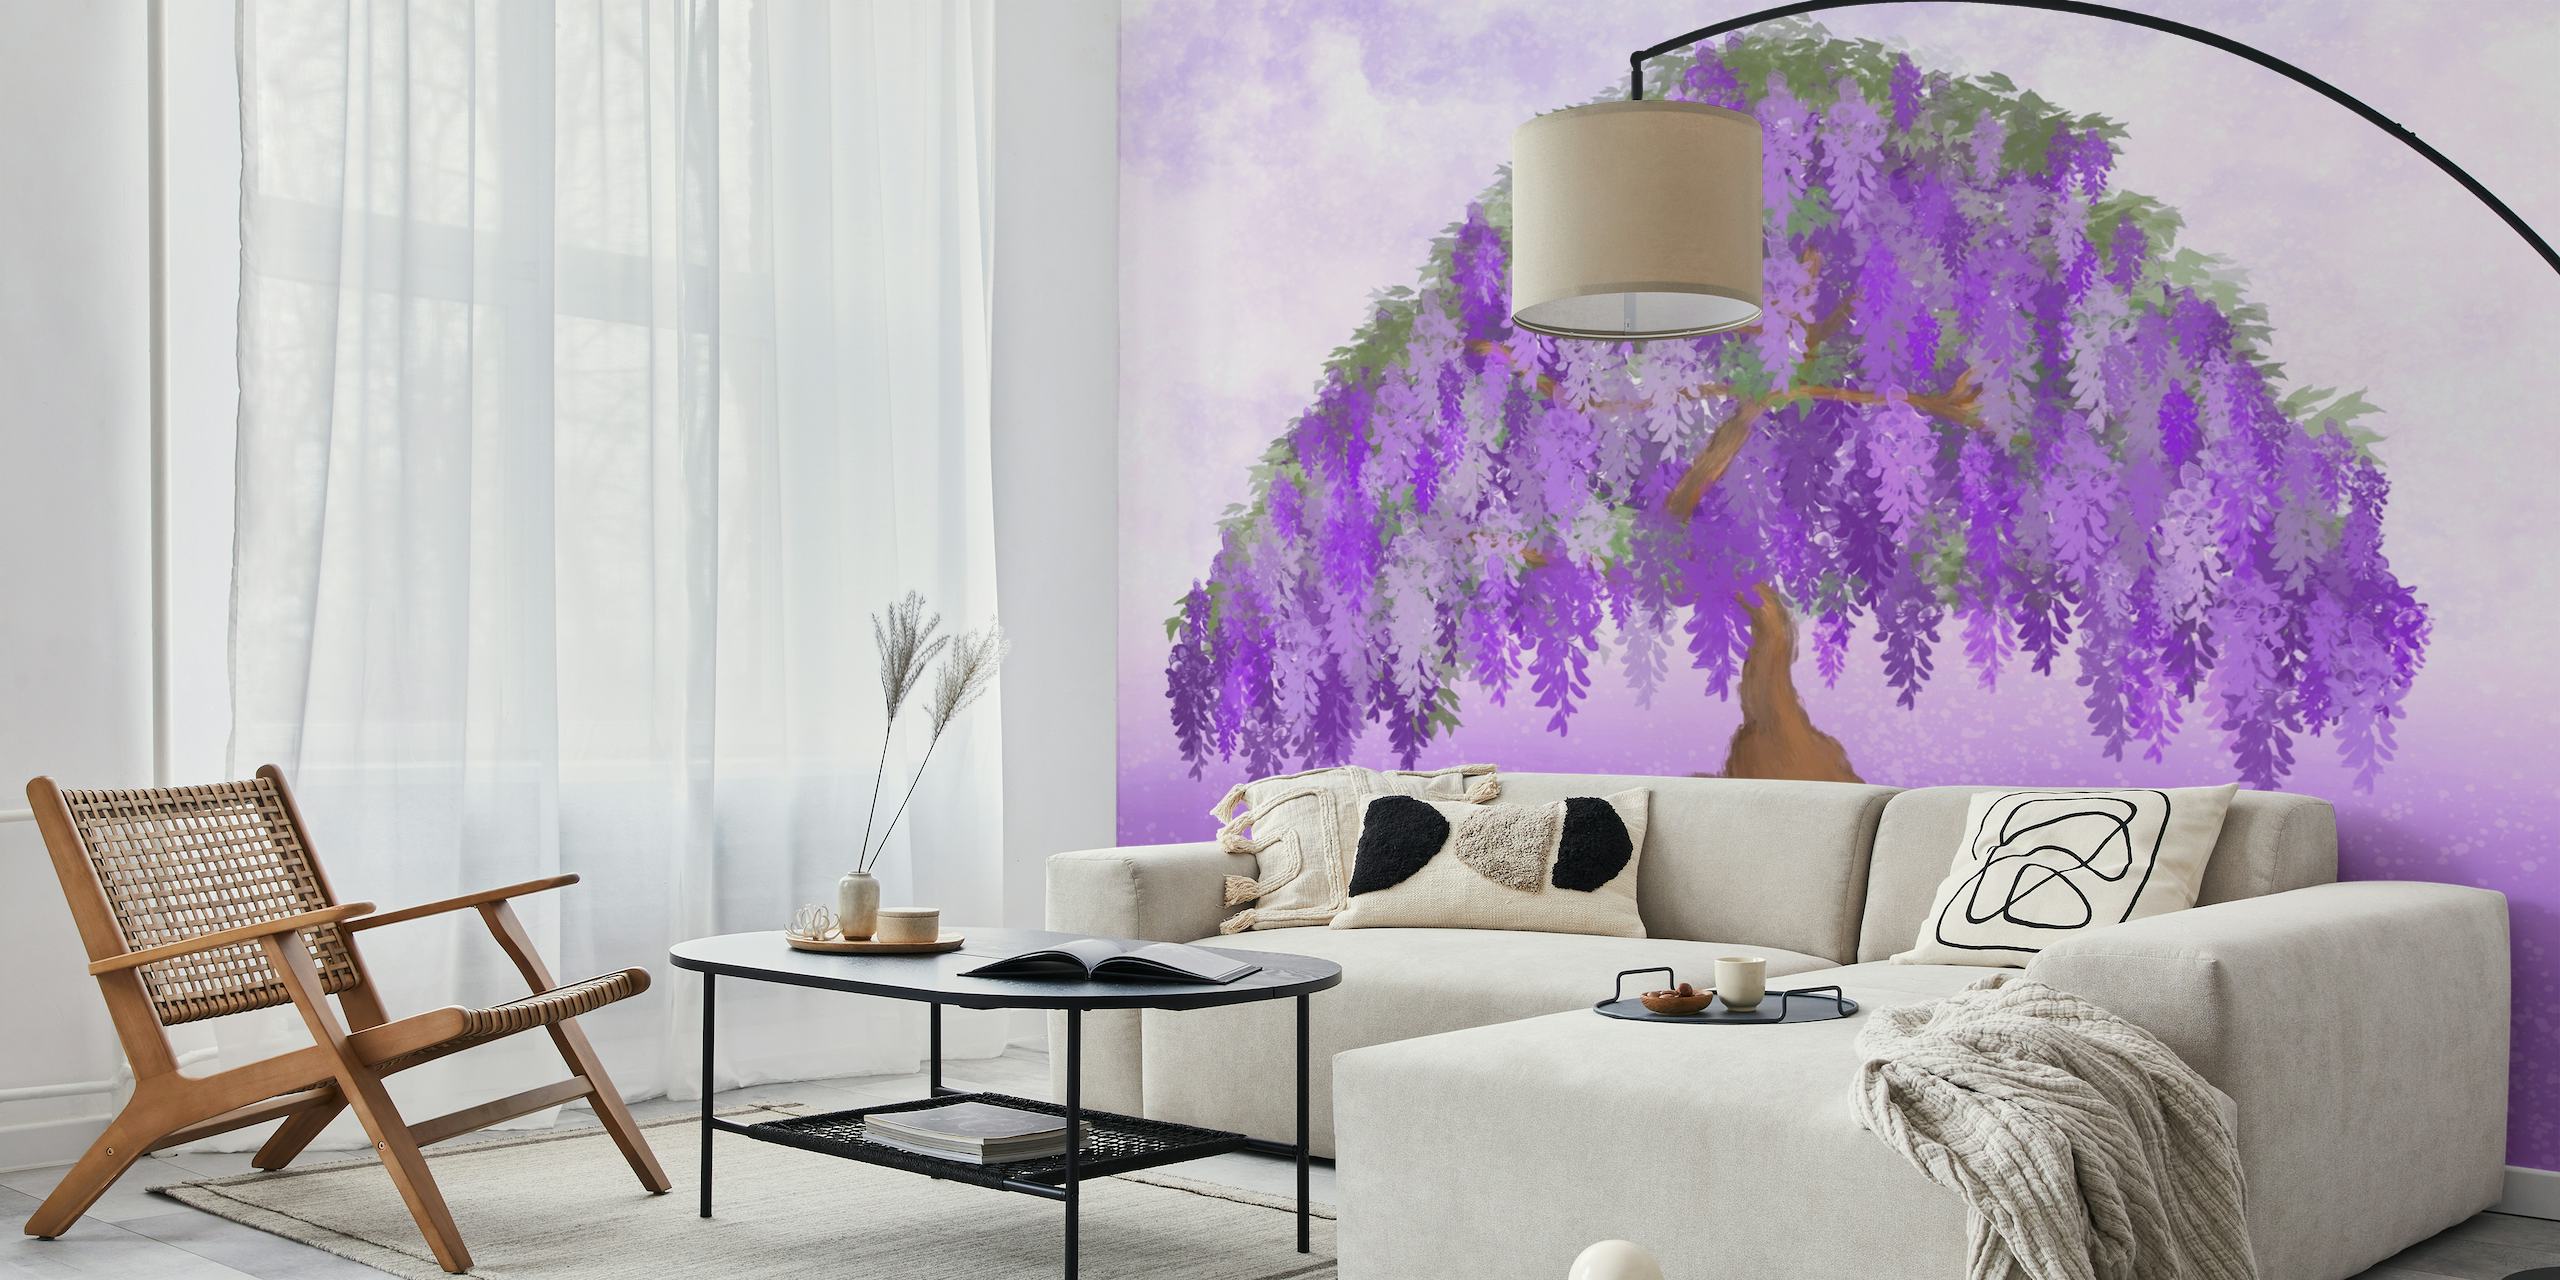 Papier peint mural Wisteria Bonsai Tree représentant un bonsaï en pleine floraison avec un fond violet doux